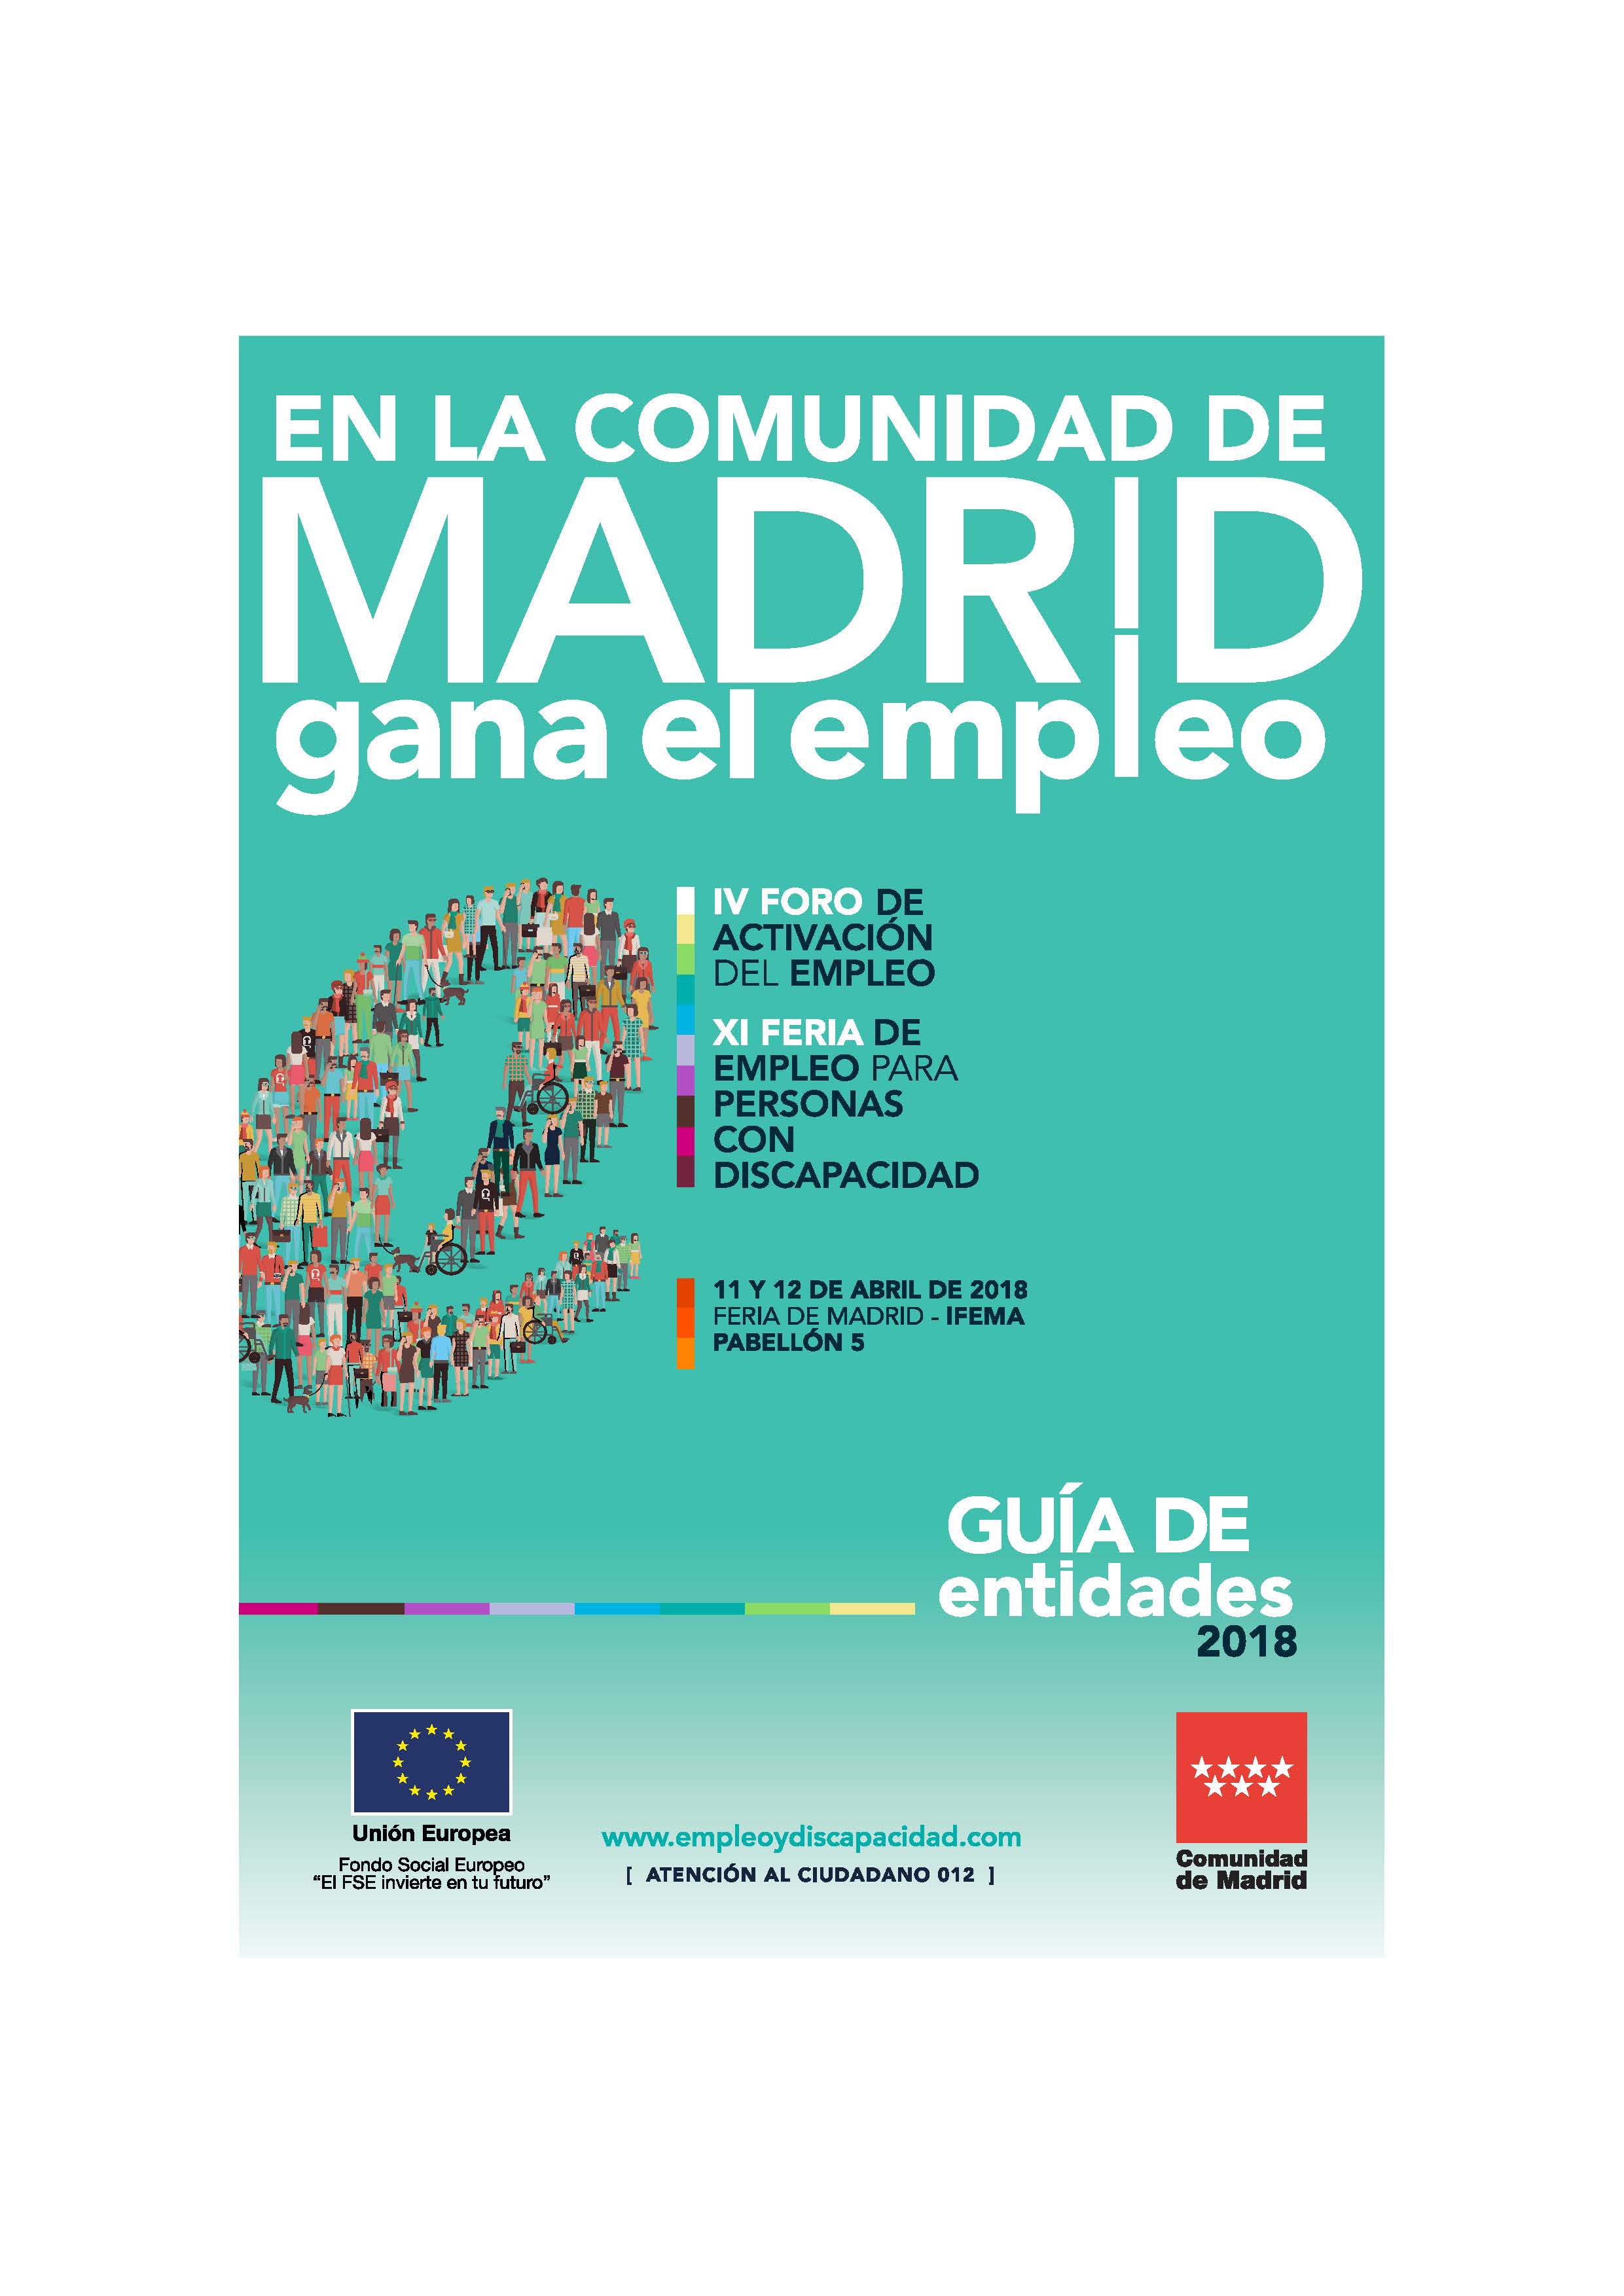 Portada de Guía de empresas 2018. XI Feria de Empleo para Personas con Discapacidad y IV Foro de Activación del Empleo de la Comunidad de Madrid